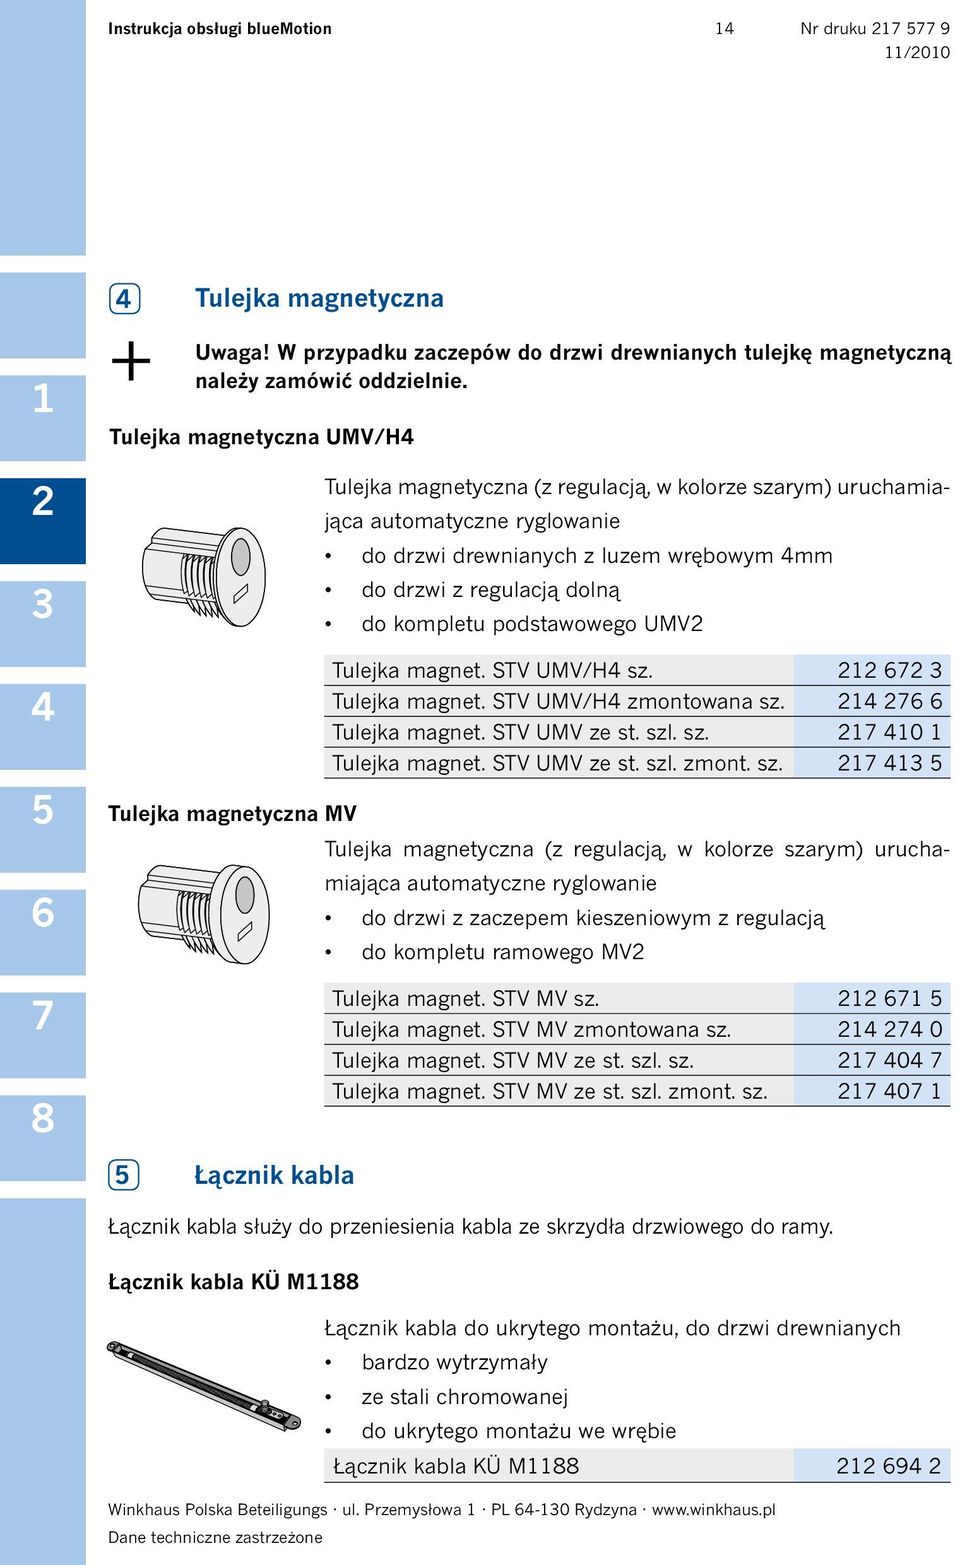 drzwi z regulacją dolną do kompletu podstawowego UMV Tulejka magnet. STV UMV/H sz.